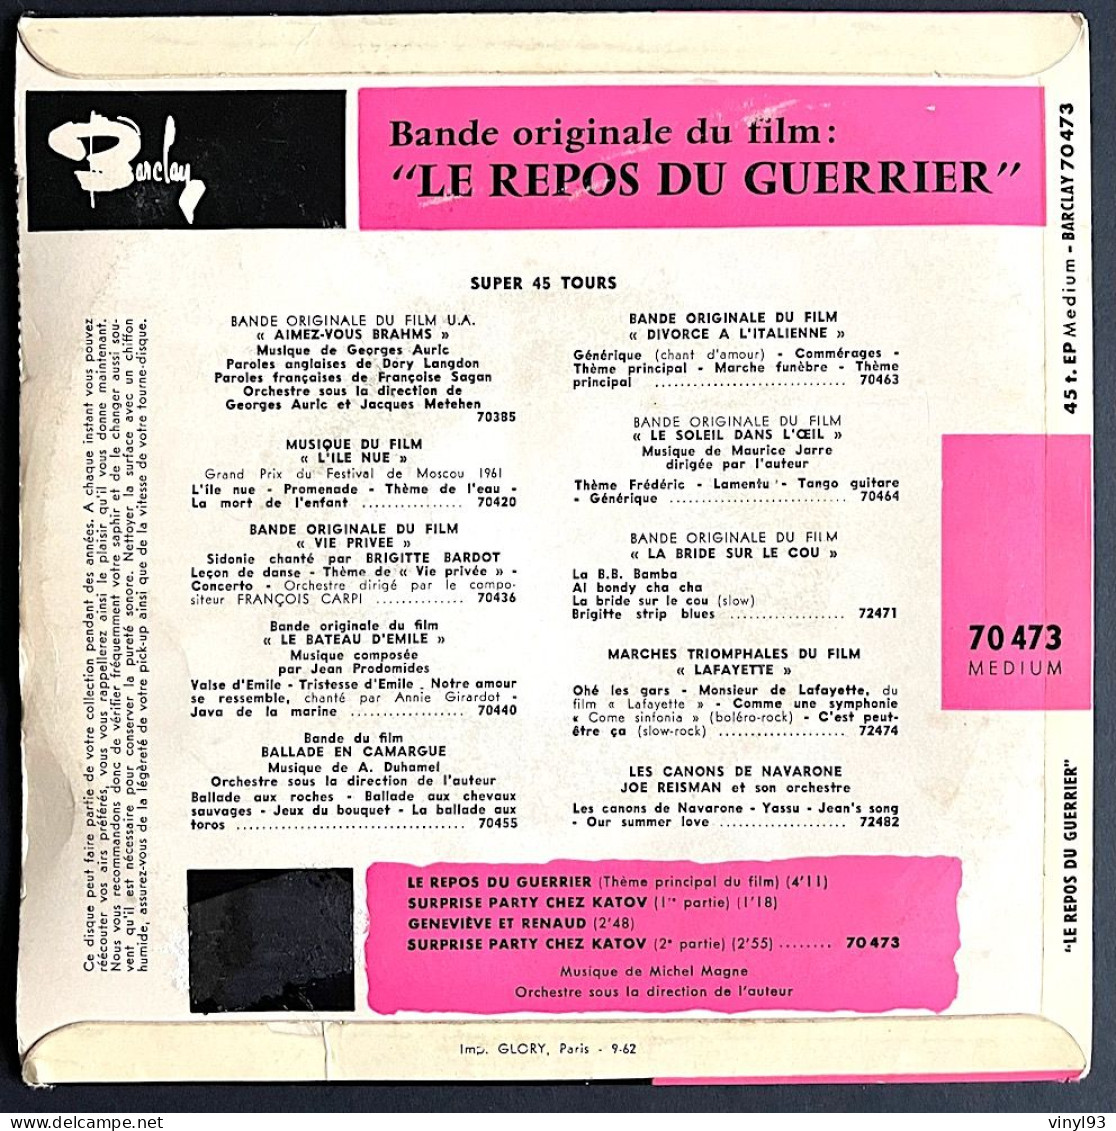 1962 - EP 45T B.O Du Film De Vadim "Le Repos Du Guerrier" Avec Brigitte Bardot - Musique M.Magne - Barclay 70 473 - Musique De Films